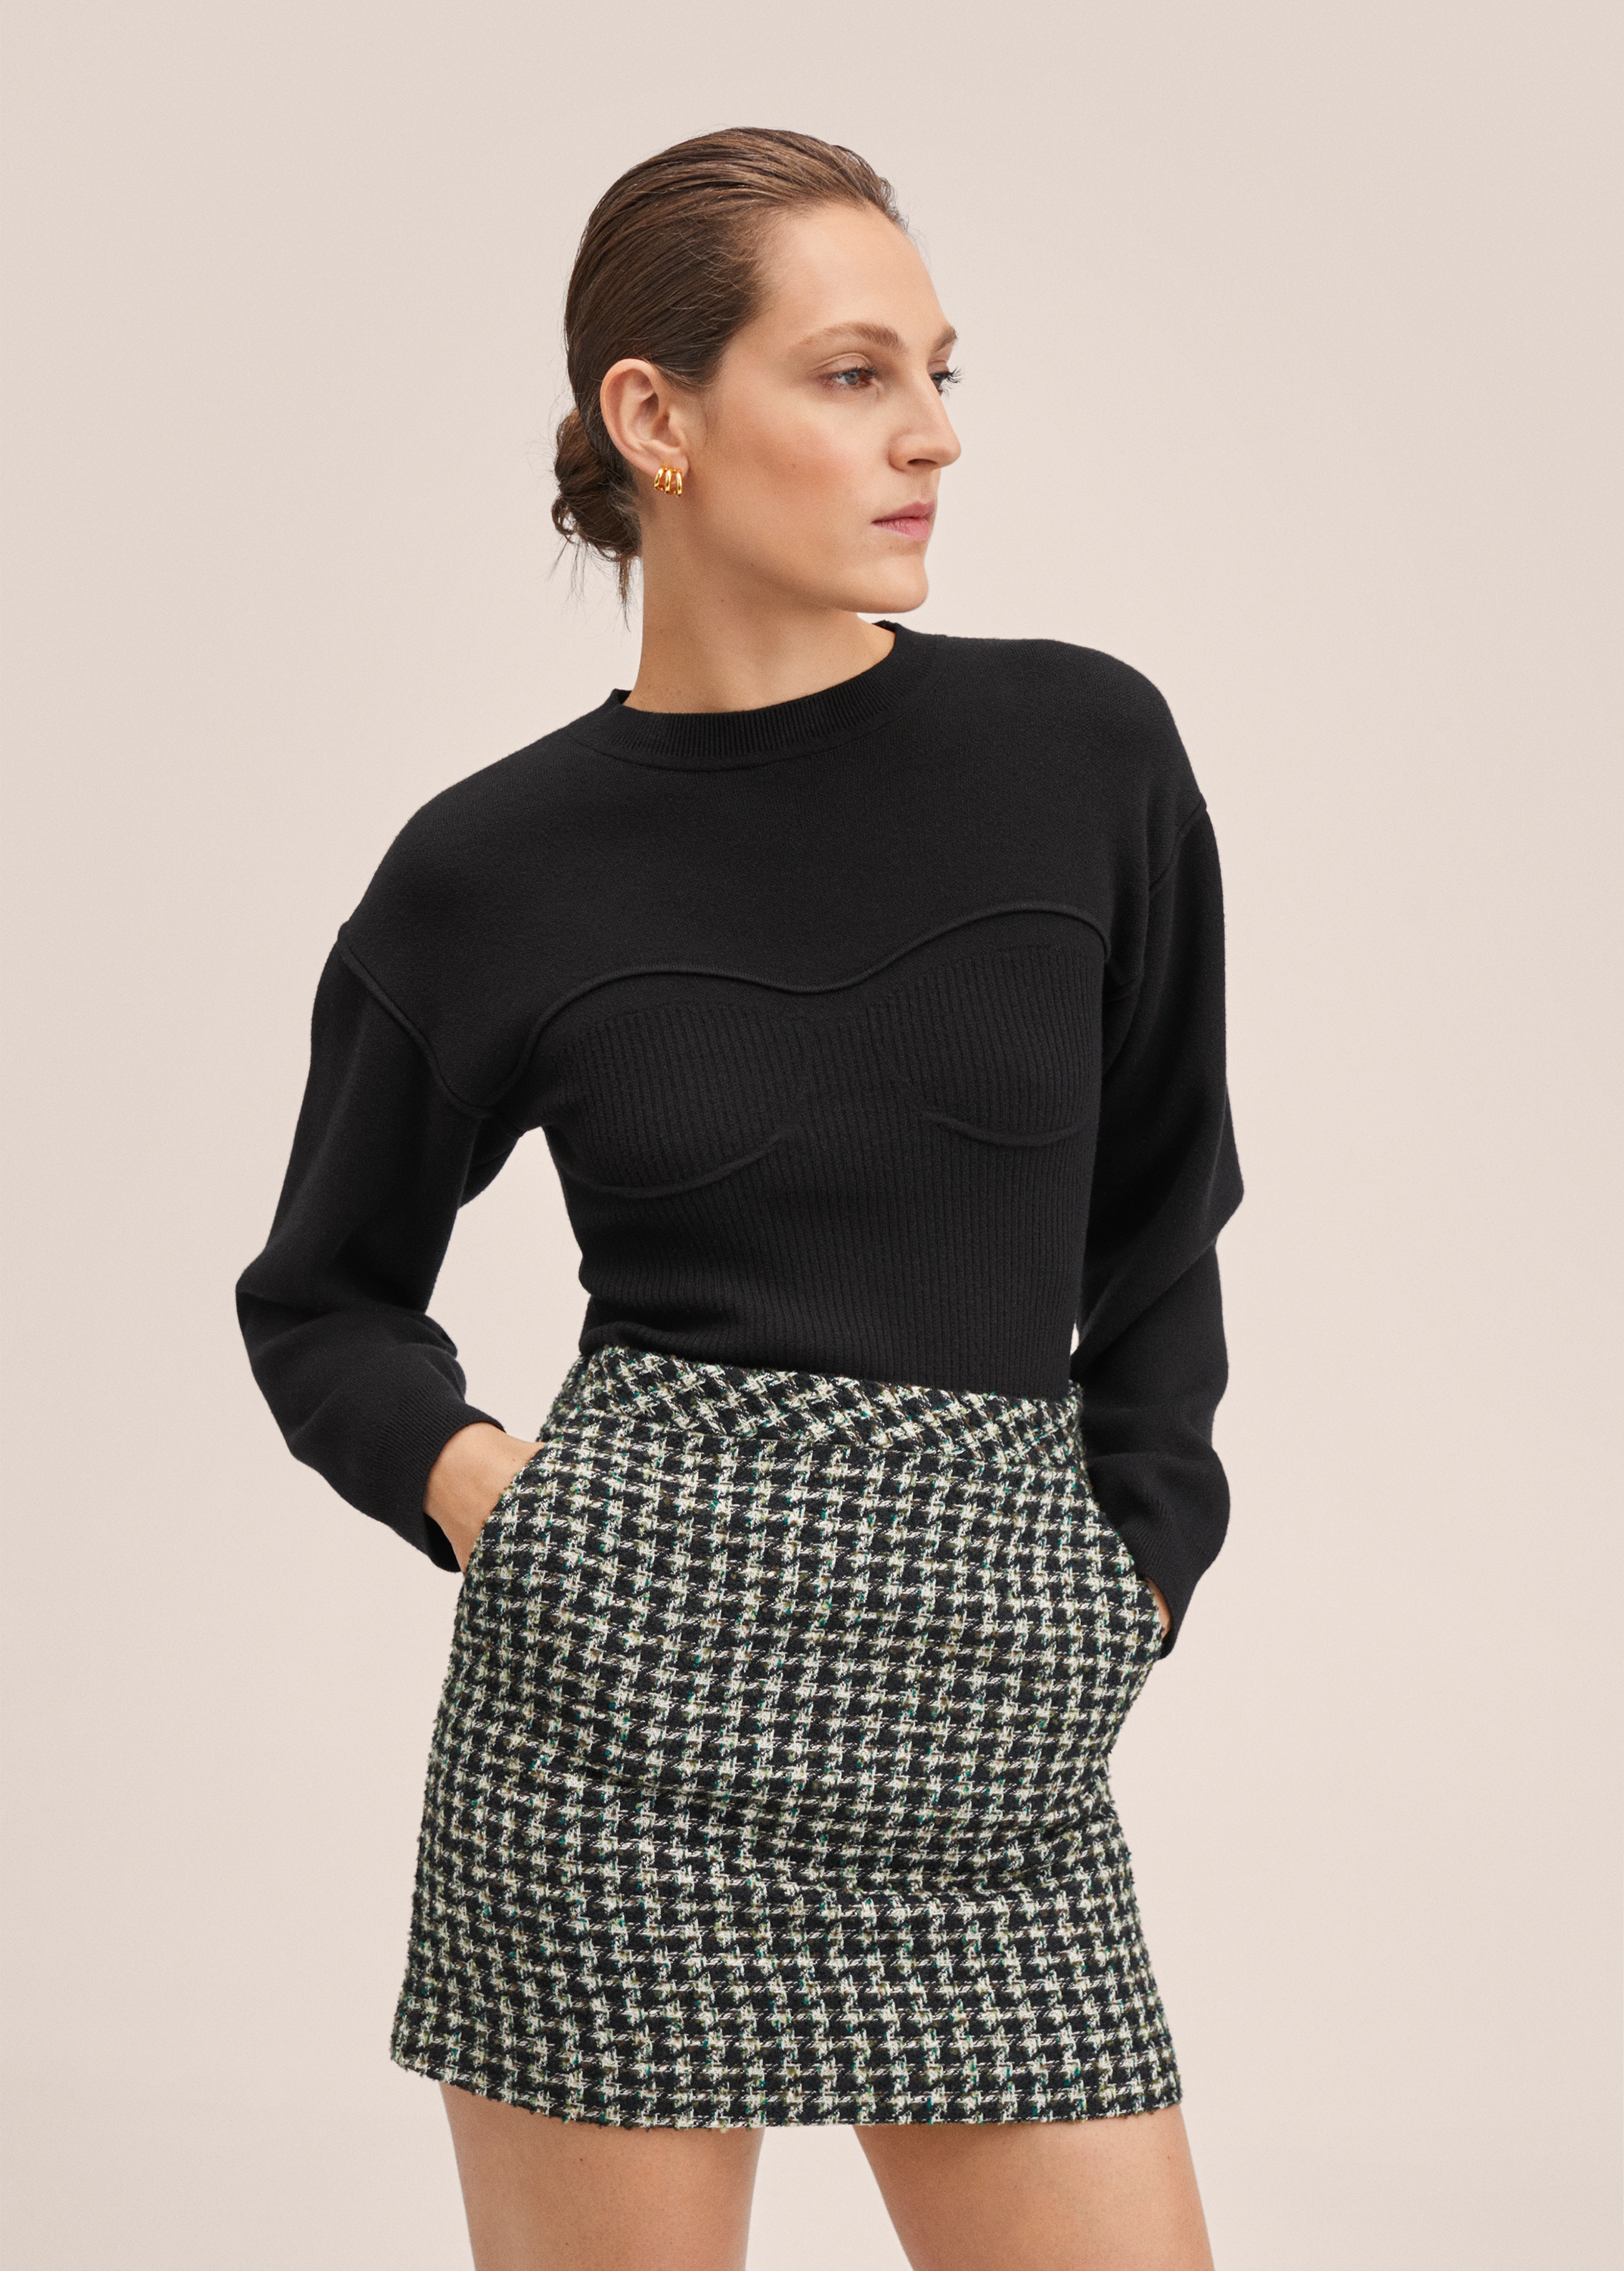 Minifalda tweed - Plano medio